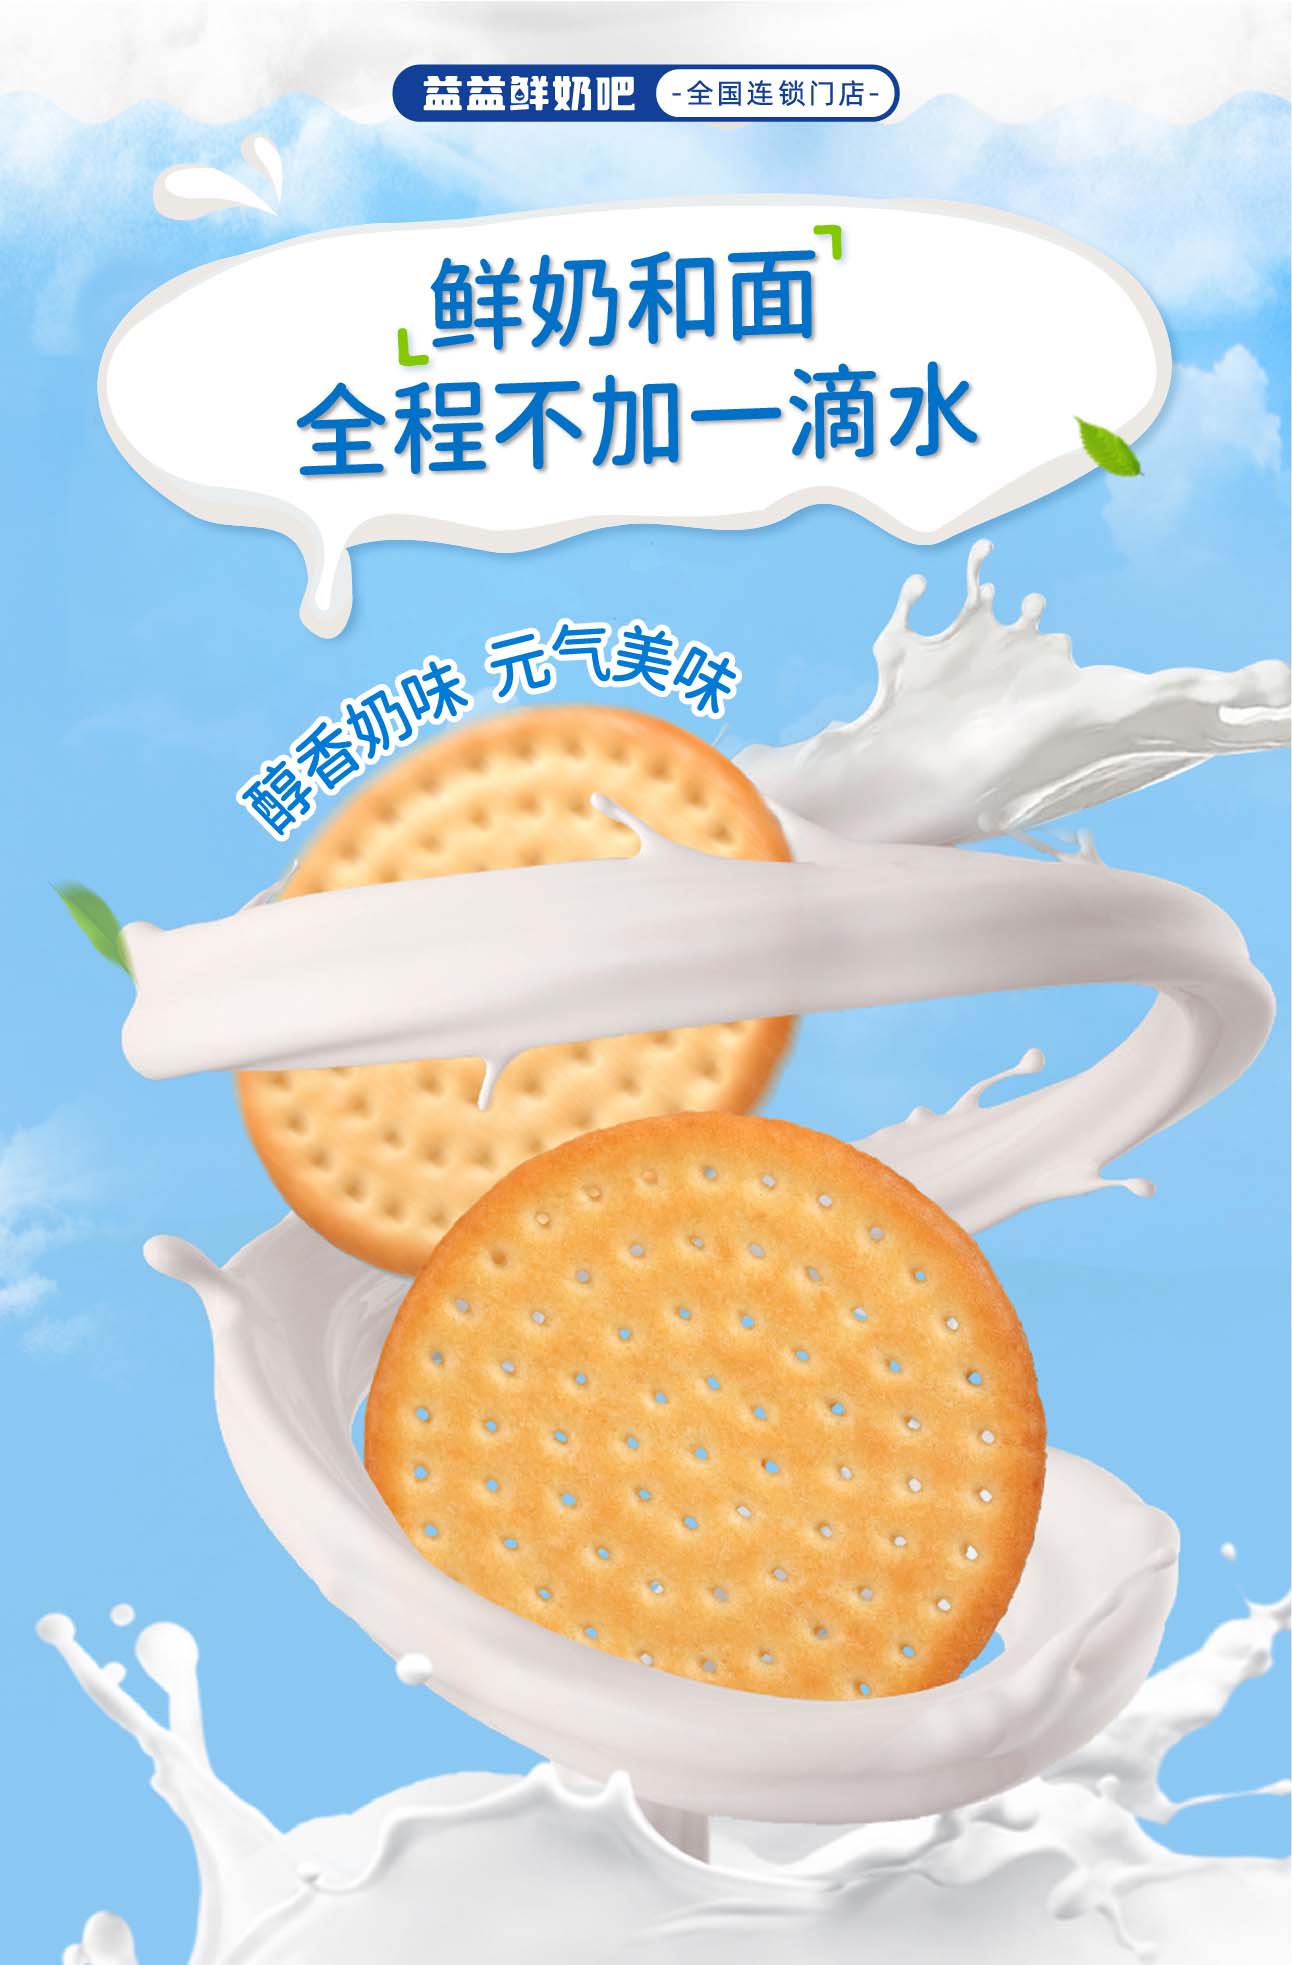 鲜乳大饼新品上市组图_画板 1 副本(3)9999.jpg